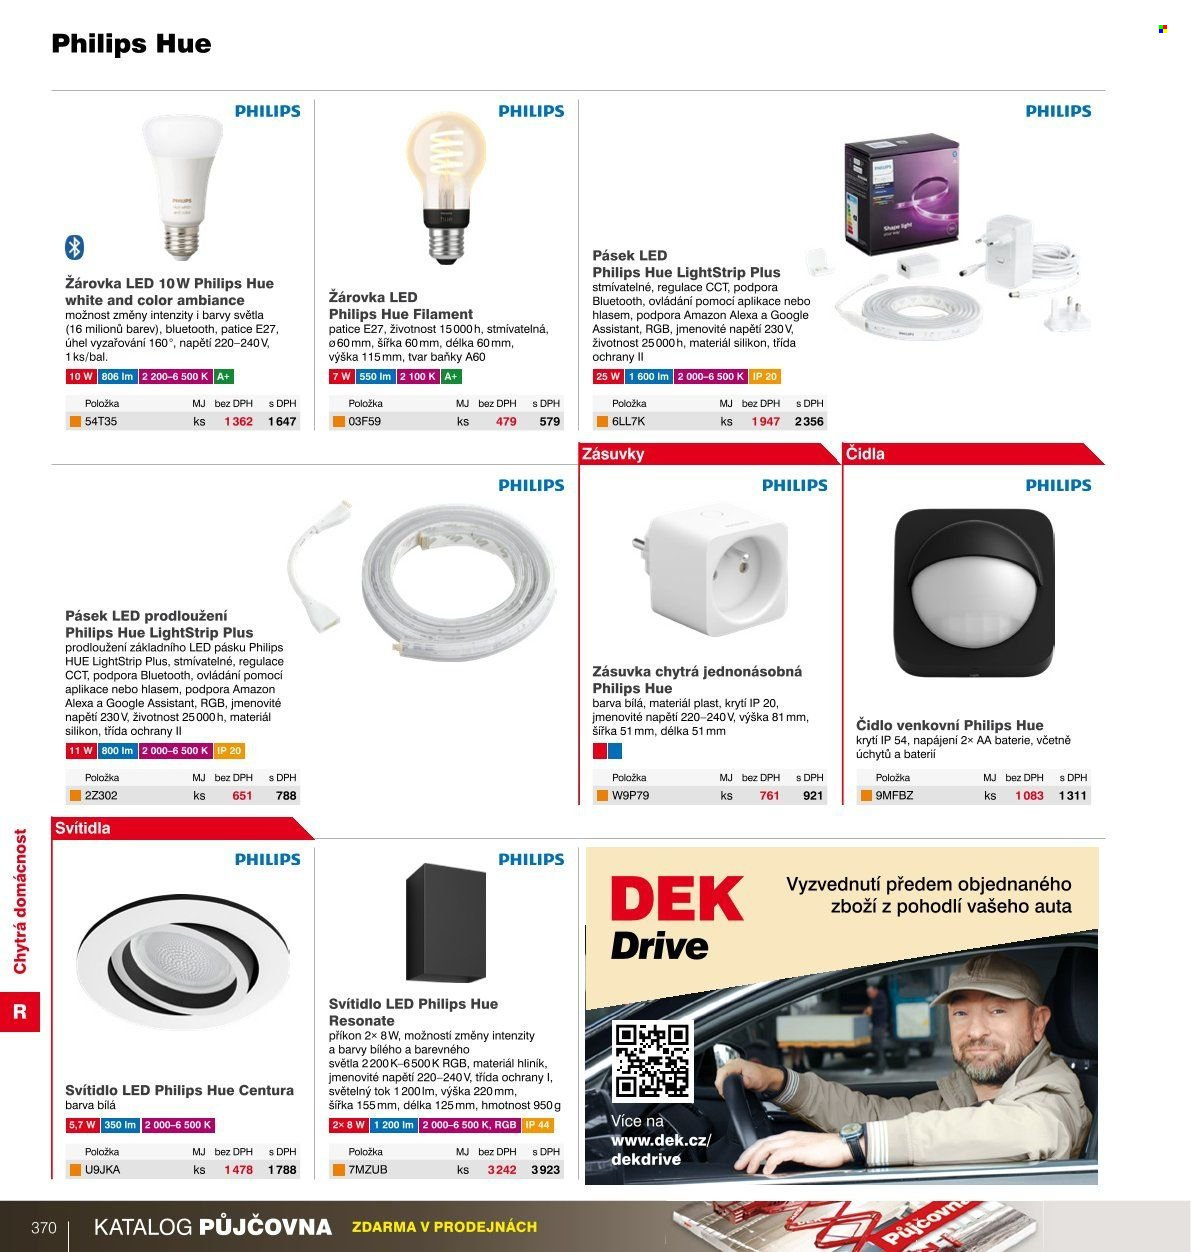 thumbnail - Leták DEK - Produkty v akci - žárovka, Philips, led pásek, svítidlo, led osvětlení, chytrá zásuvka. Strana 365.